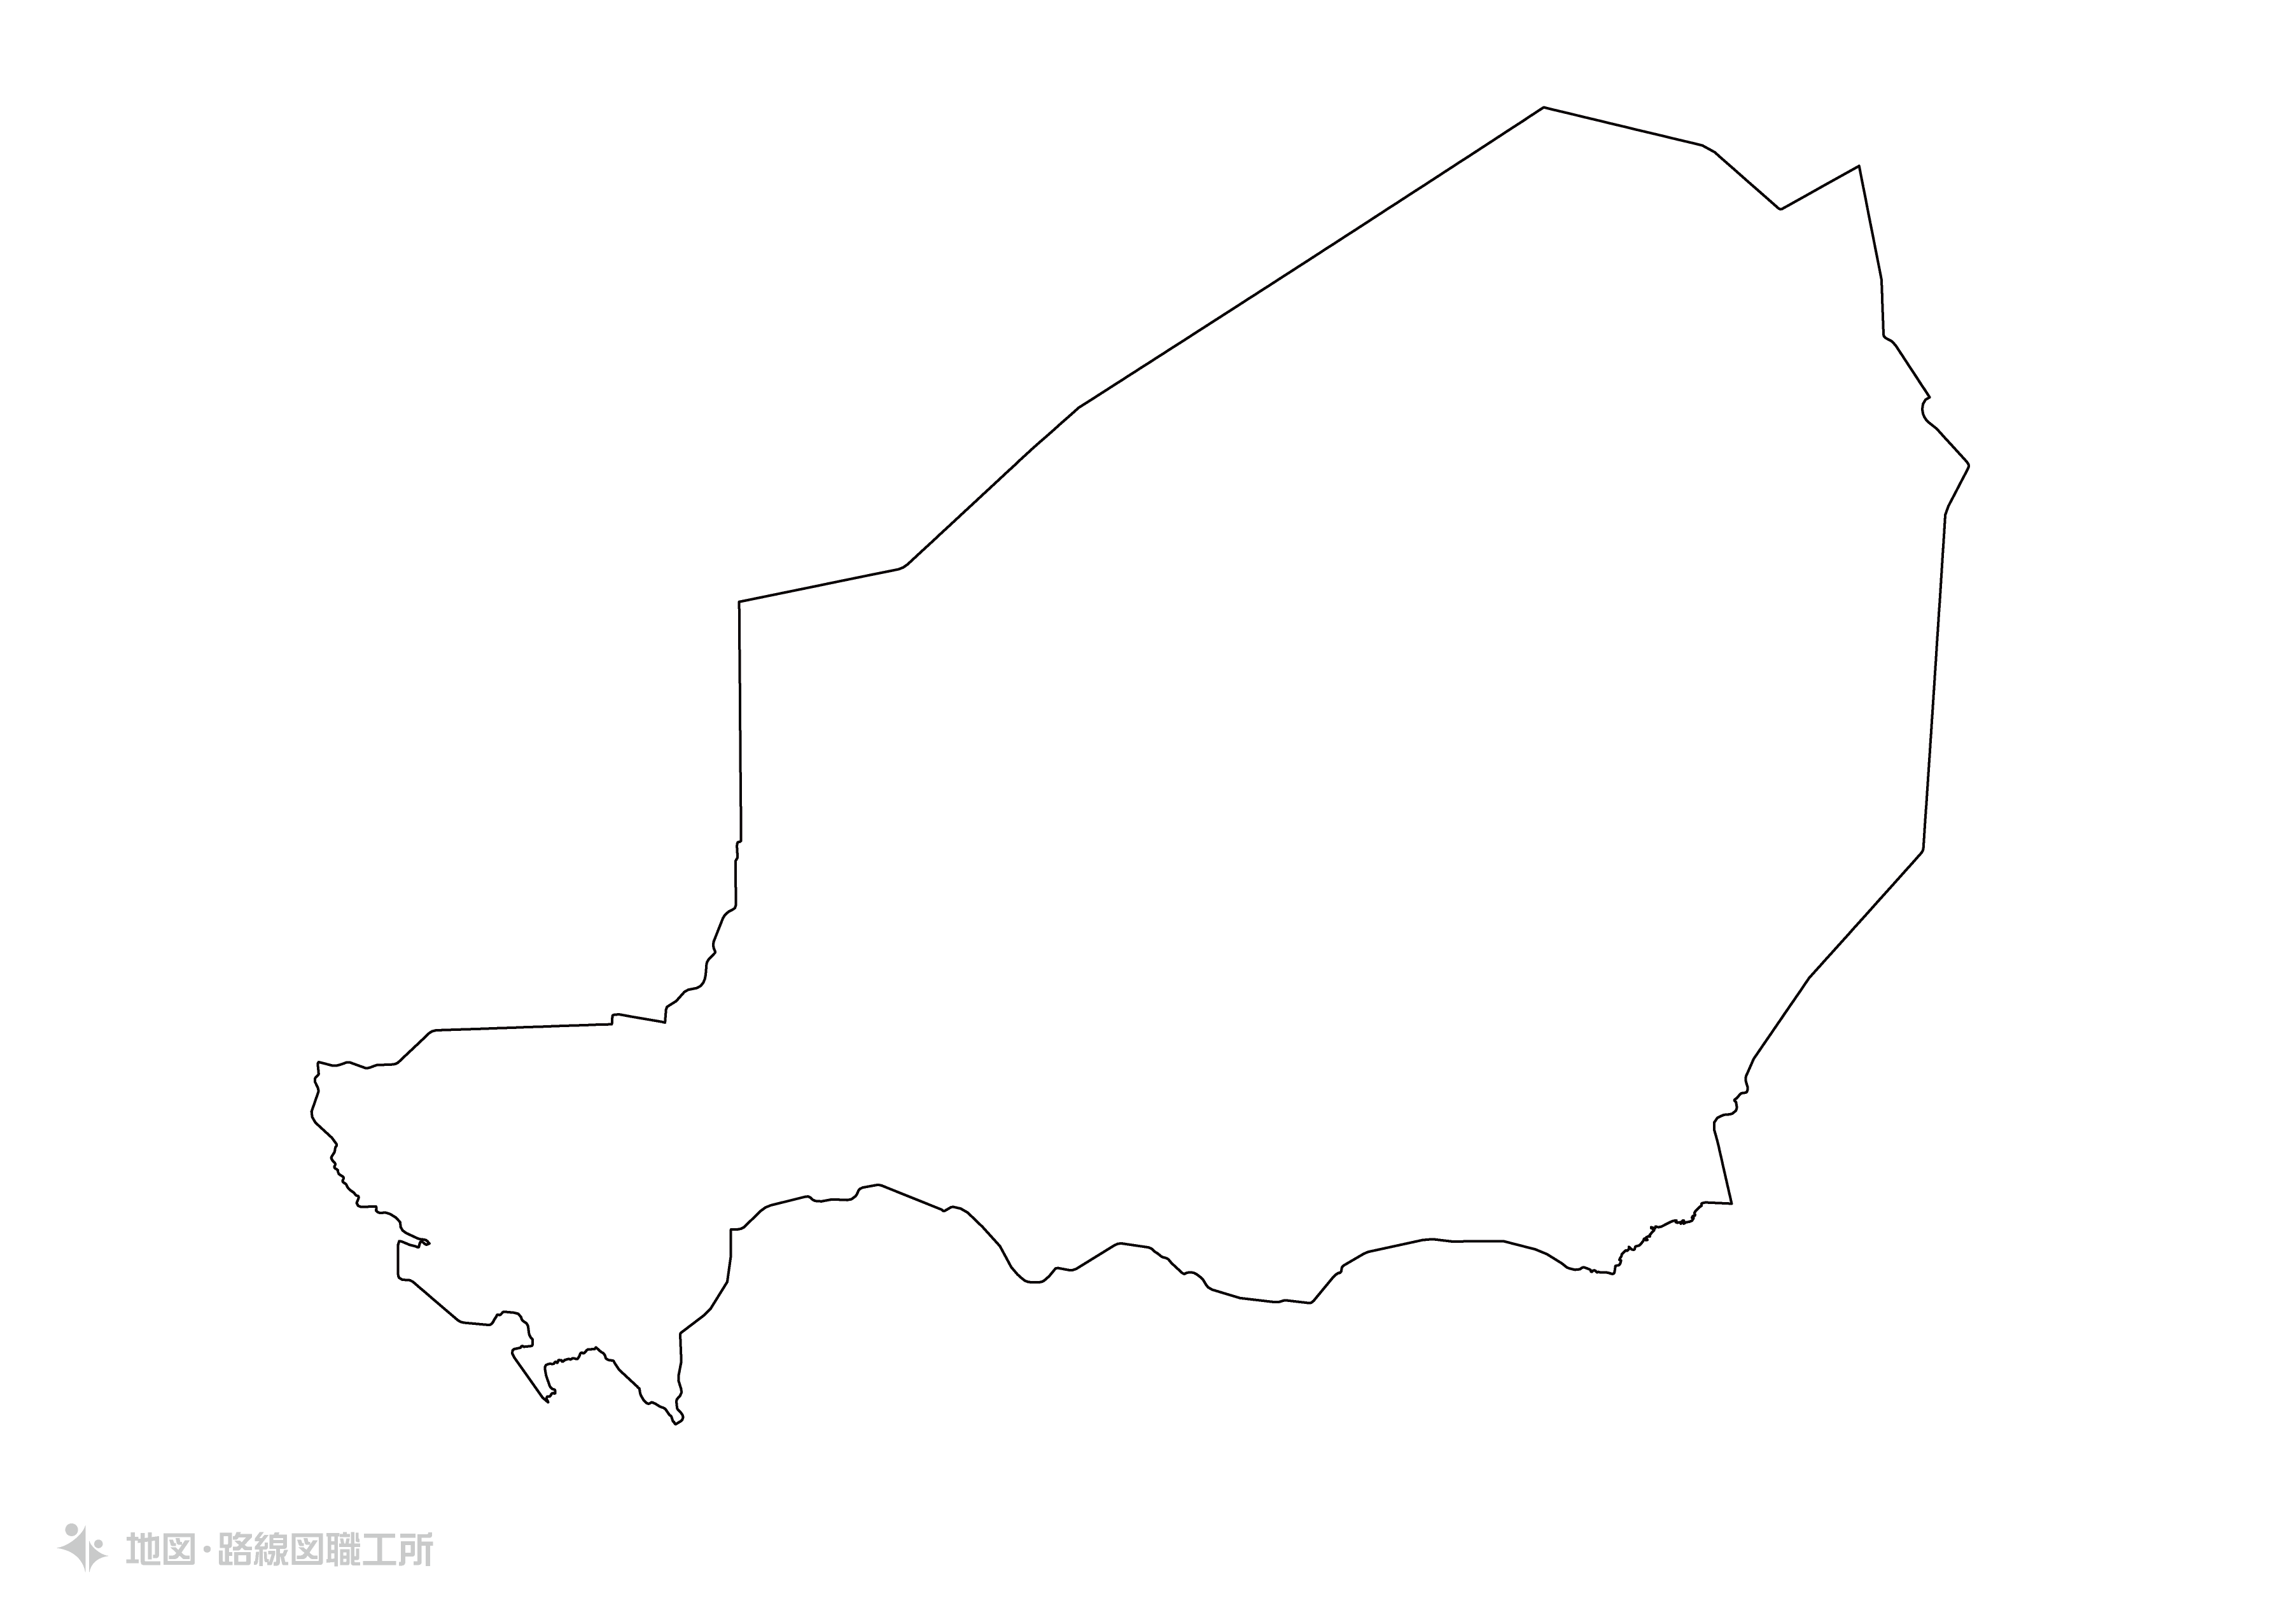 世界の白地図 ニジェール共和国 republic-of-niger map